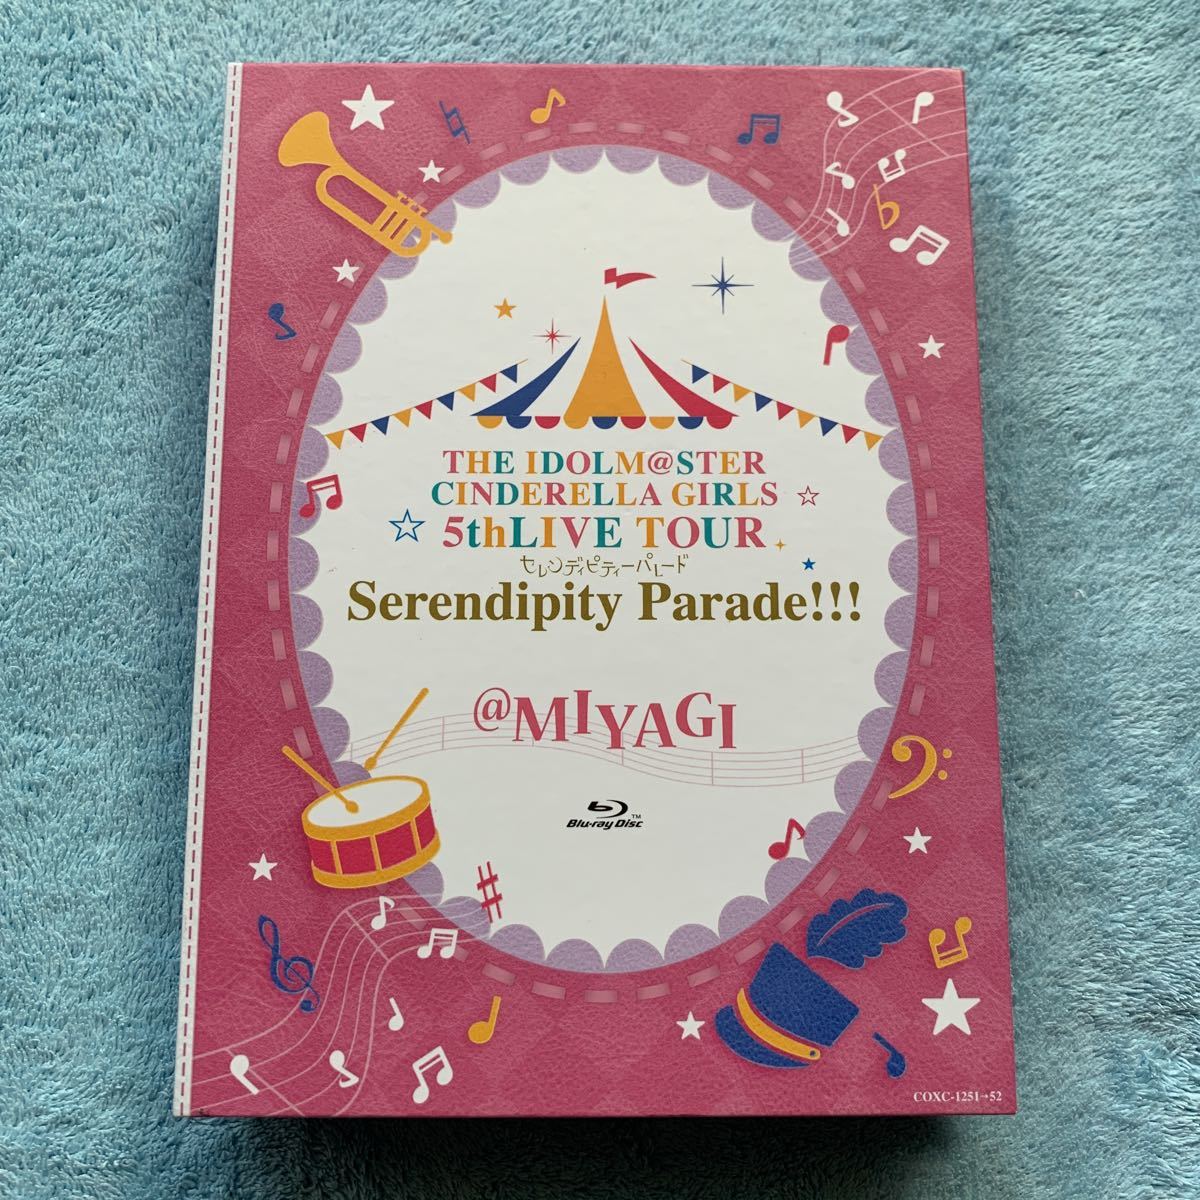 THE IDOLM@STER CINDERELLA GIRLS 5thLIVE TOUR Serendipity Parade @MIYAGI  Blu ray アイドルマスターシンデレラガールズ 宮城